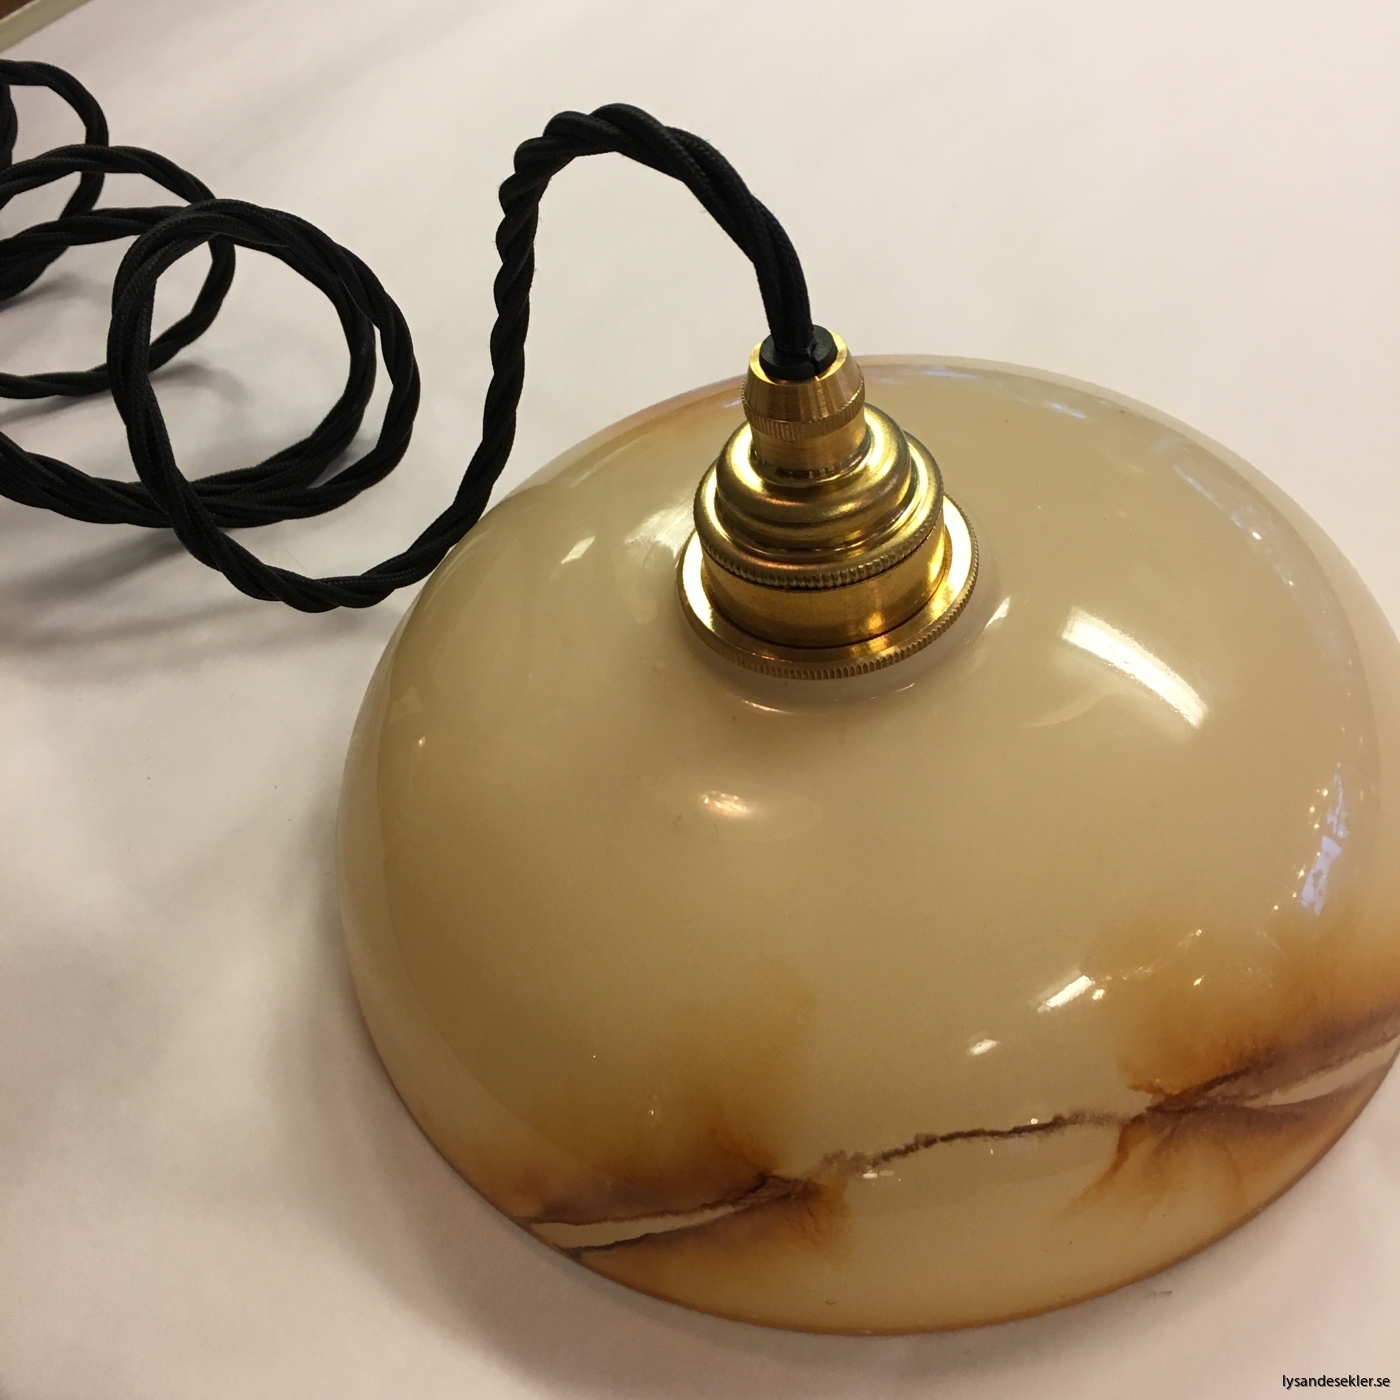 tygsladd textilssladd lampupphäng med 2 ringar utan skruvar för skärm eller glödlampa (8)